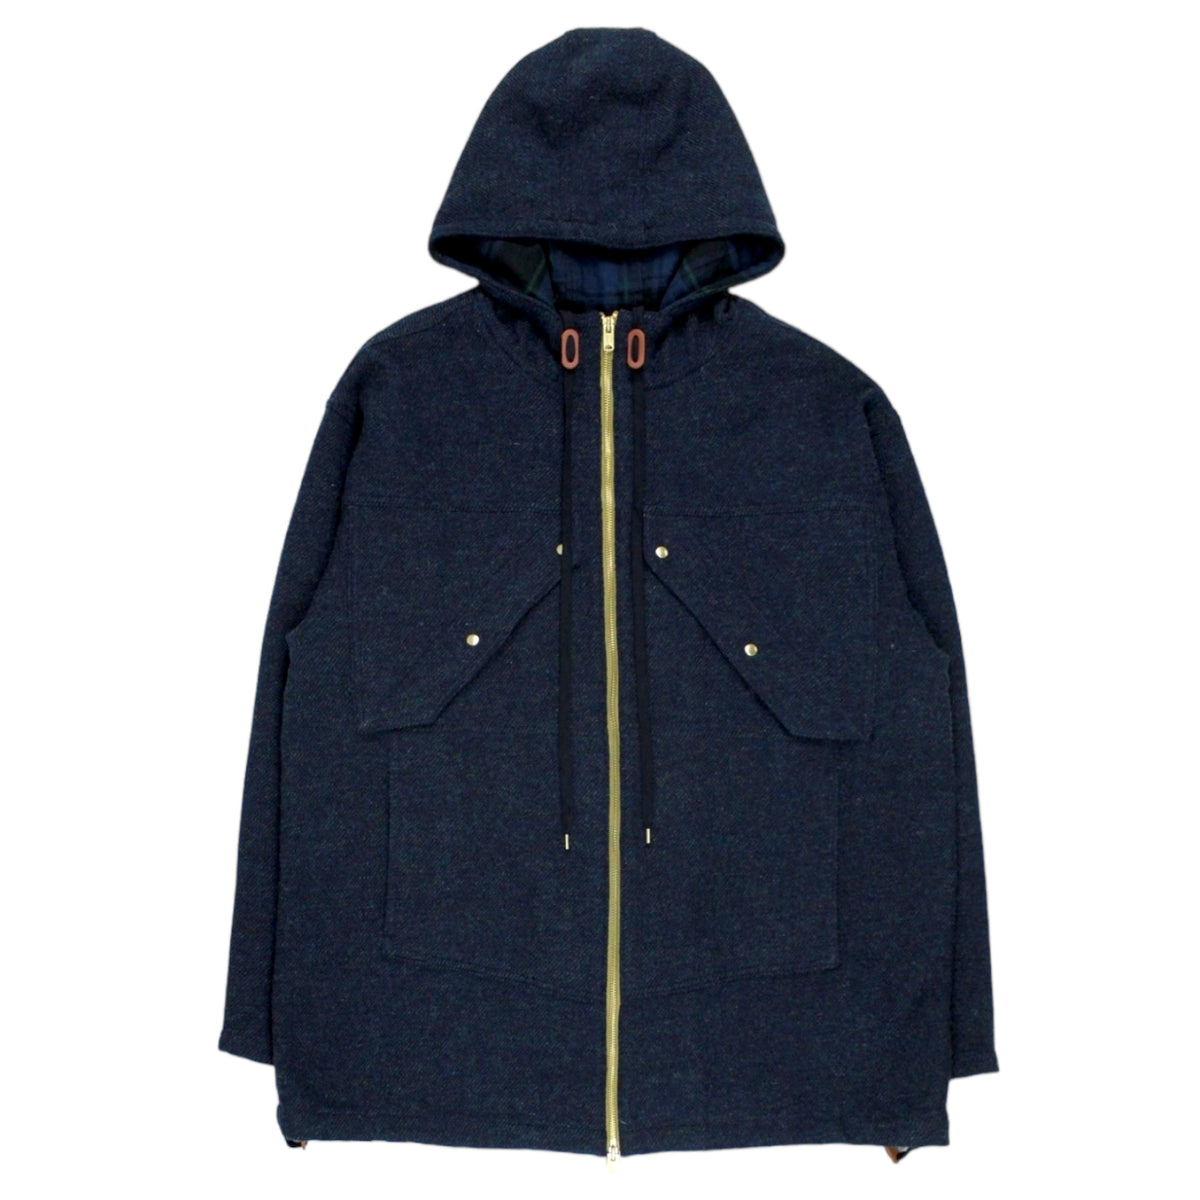 Garbstore Navy/Green Hooded Jacket